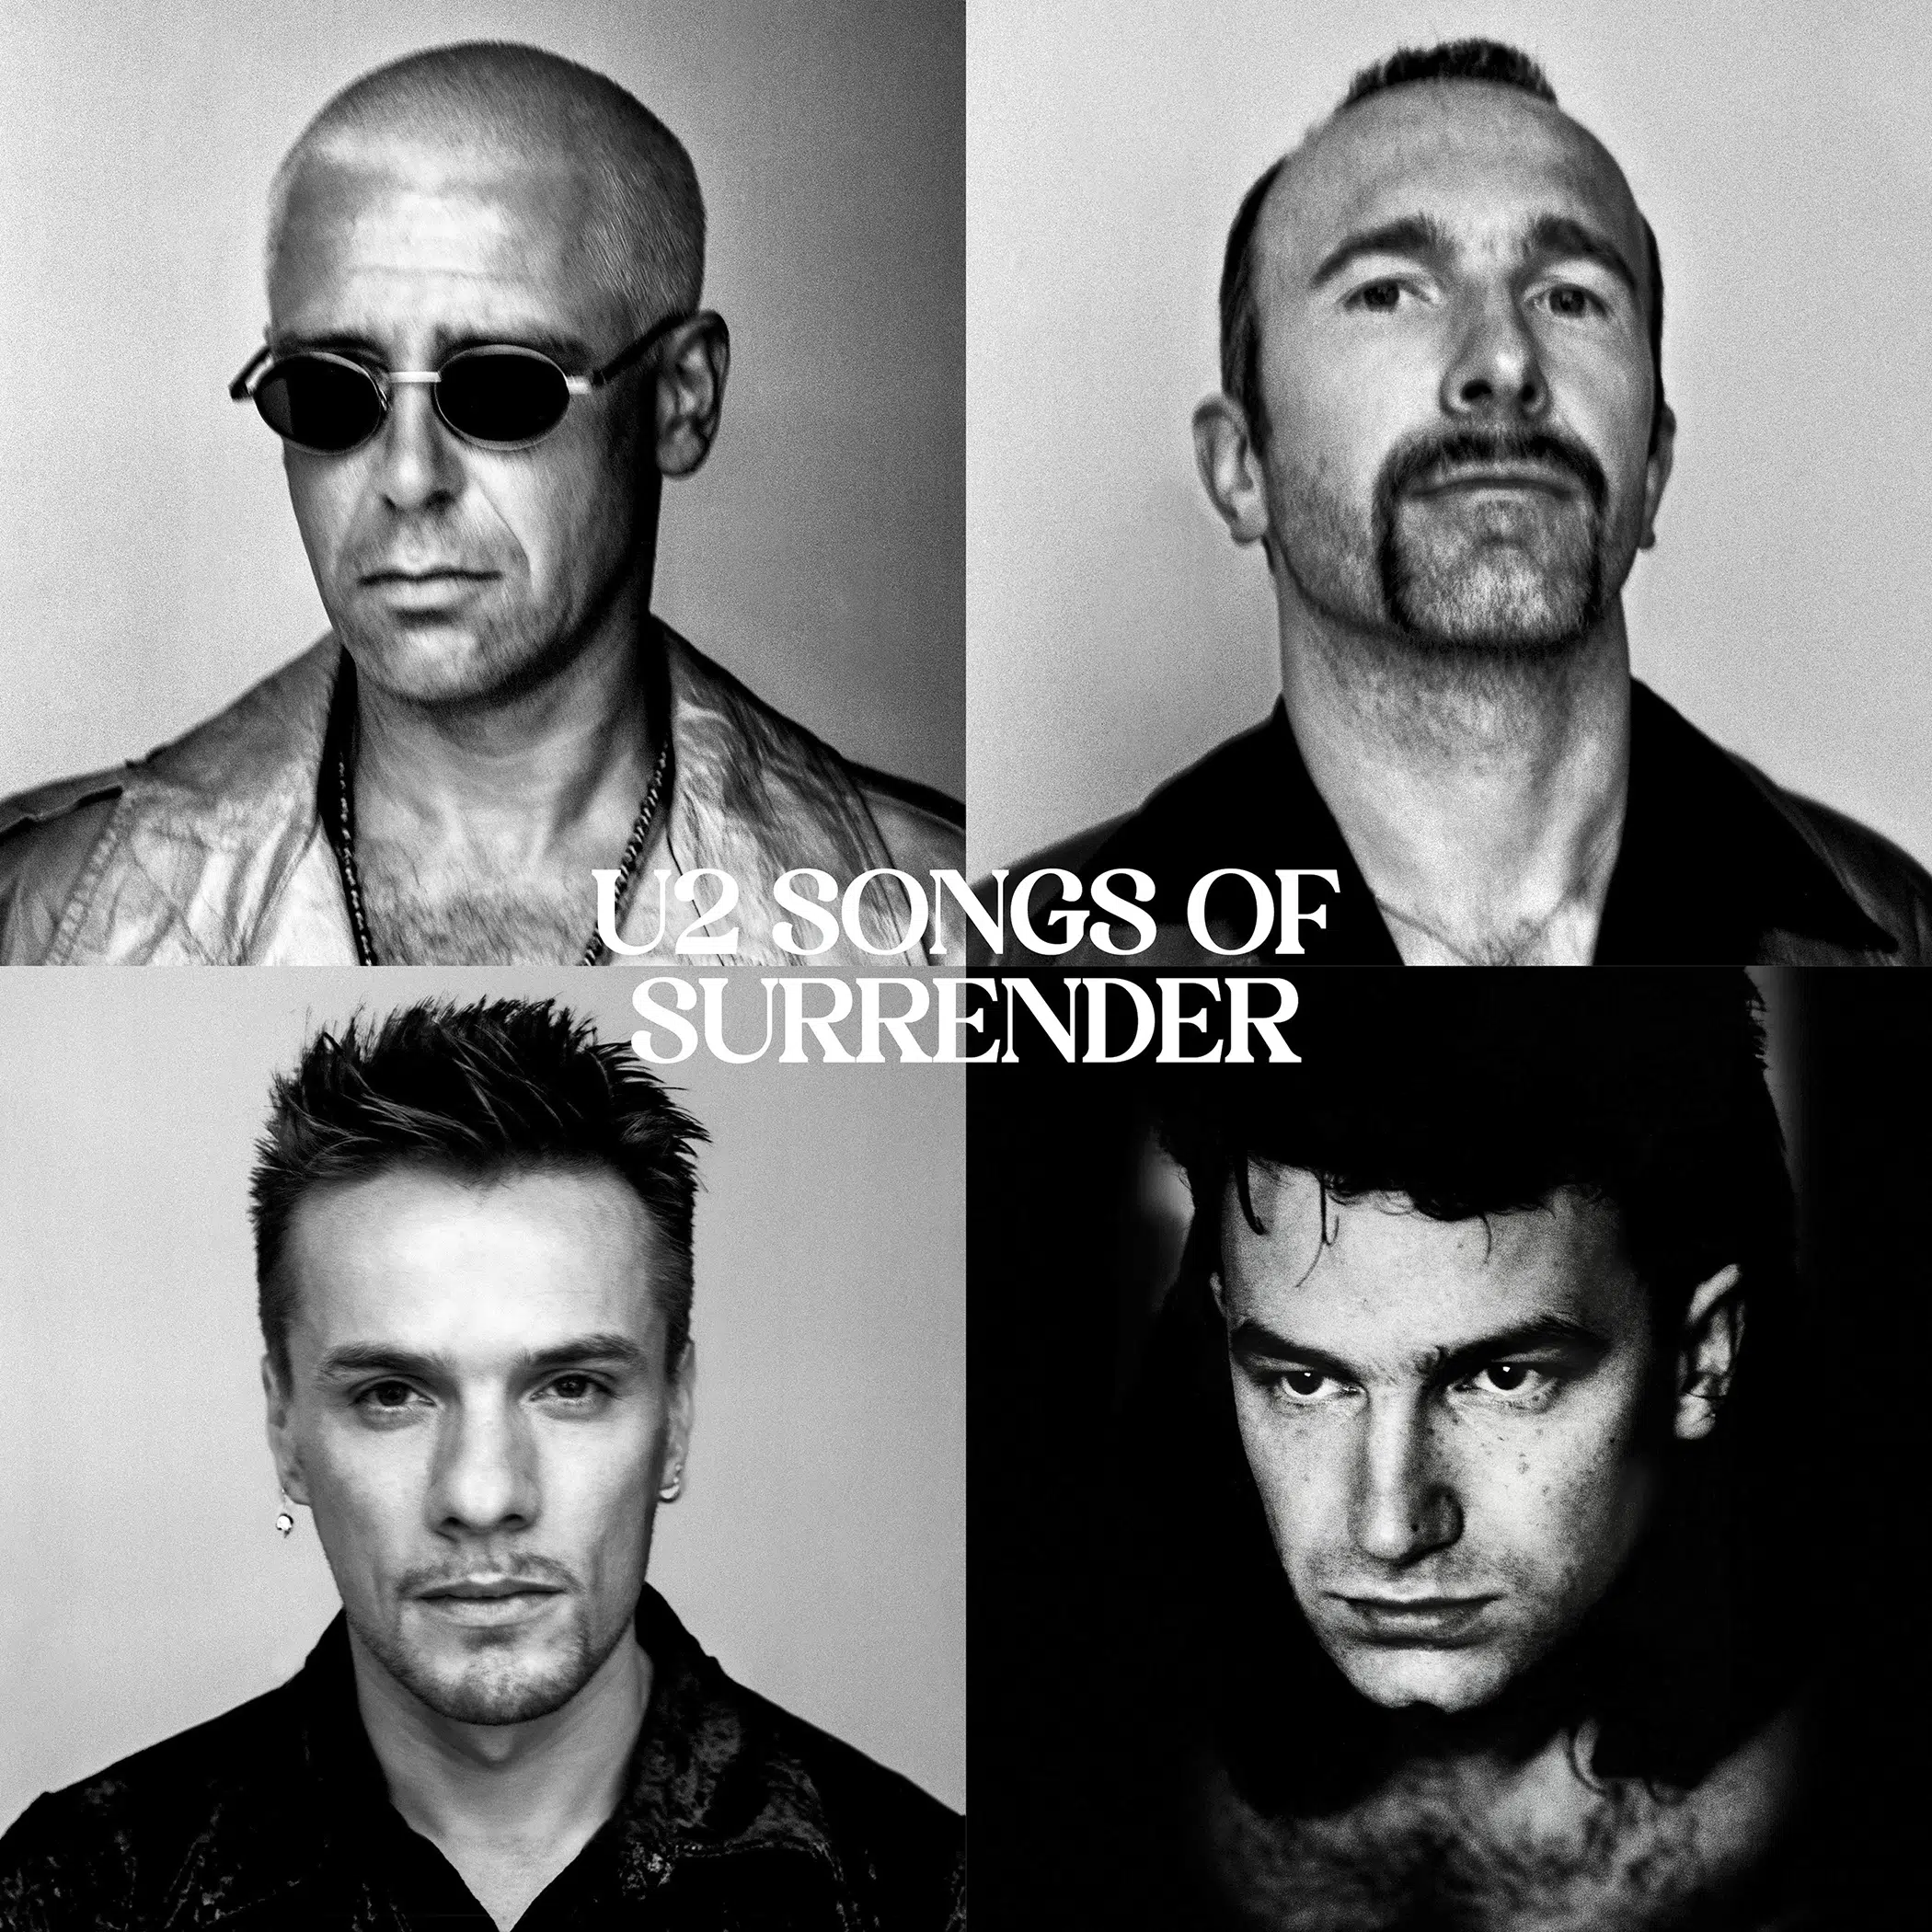 U2 Songs of Surrender cover artwork